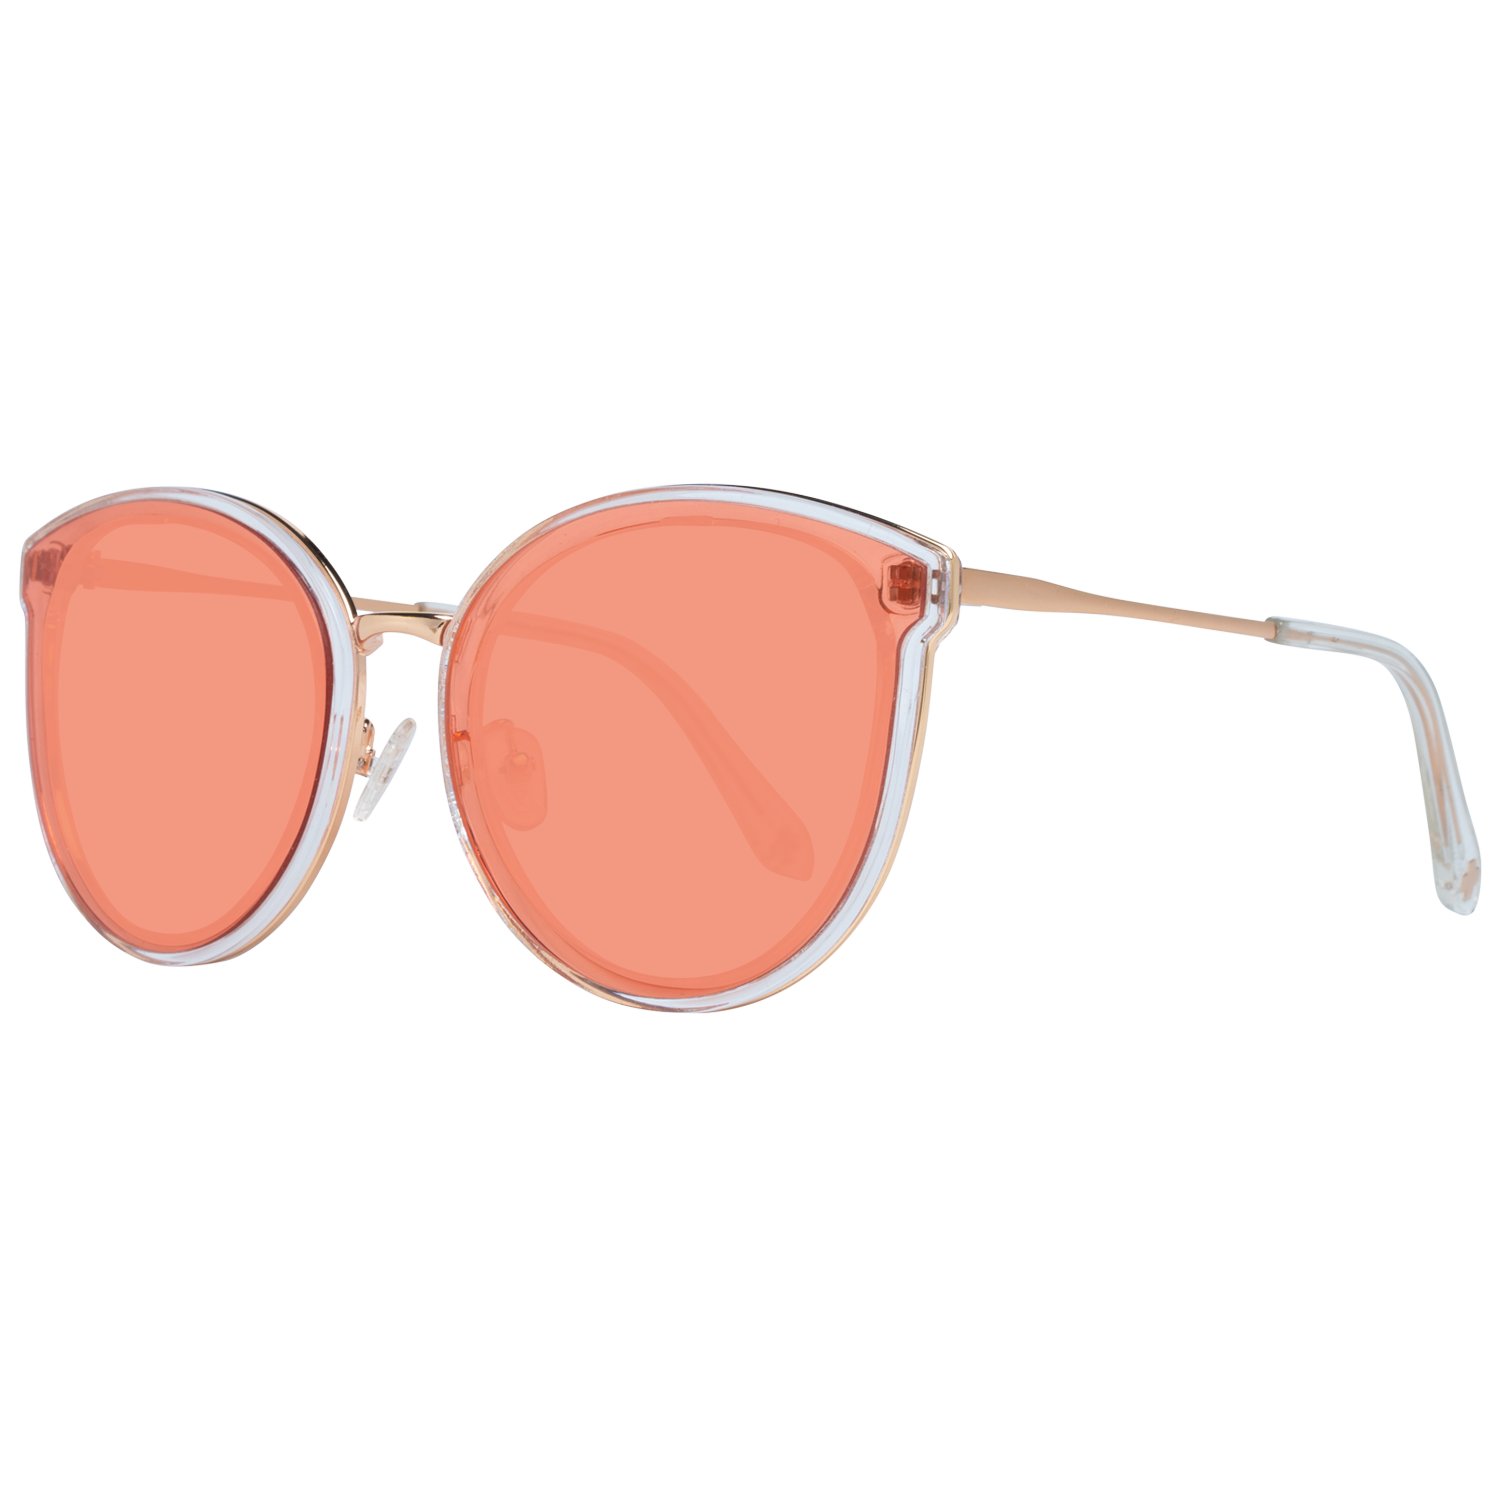 Spy Sunglasses Spy Sunglasses 6700000000008 Colada 63 Eyeglasses Eyewear UK USA Australia 